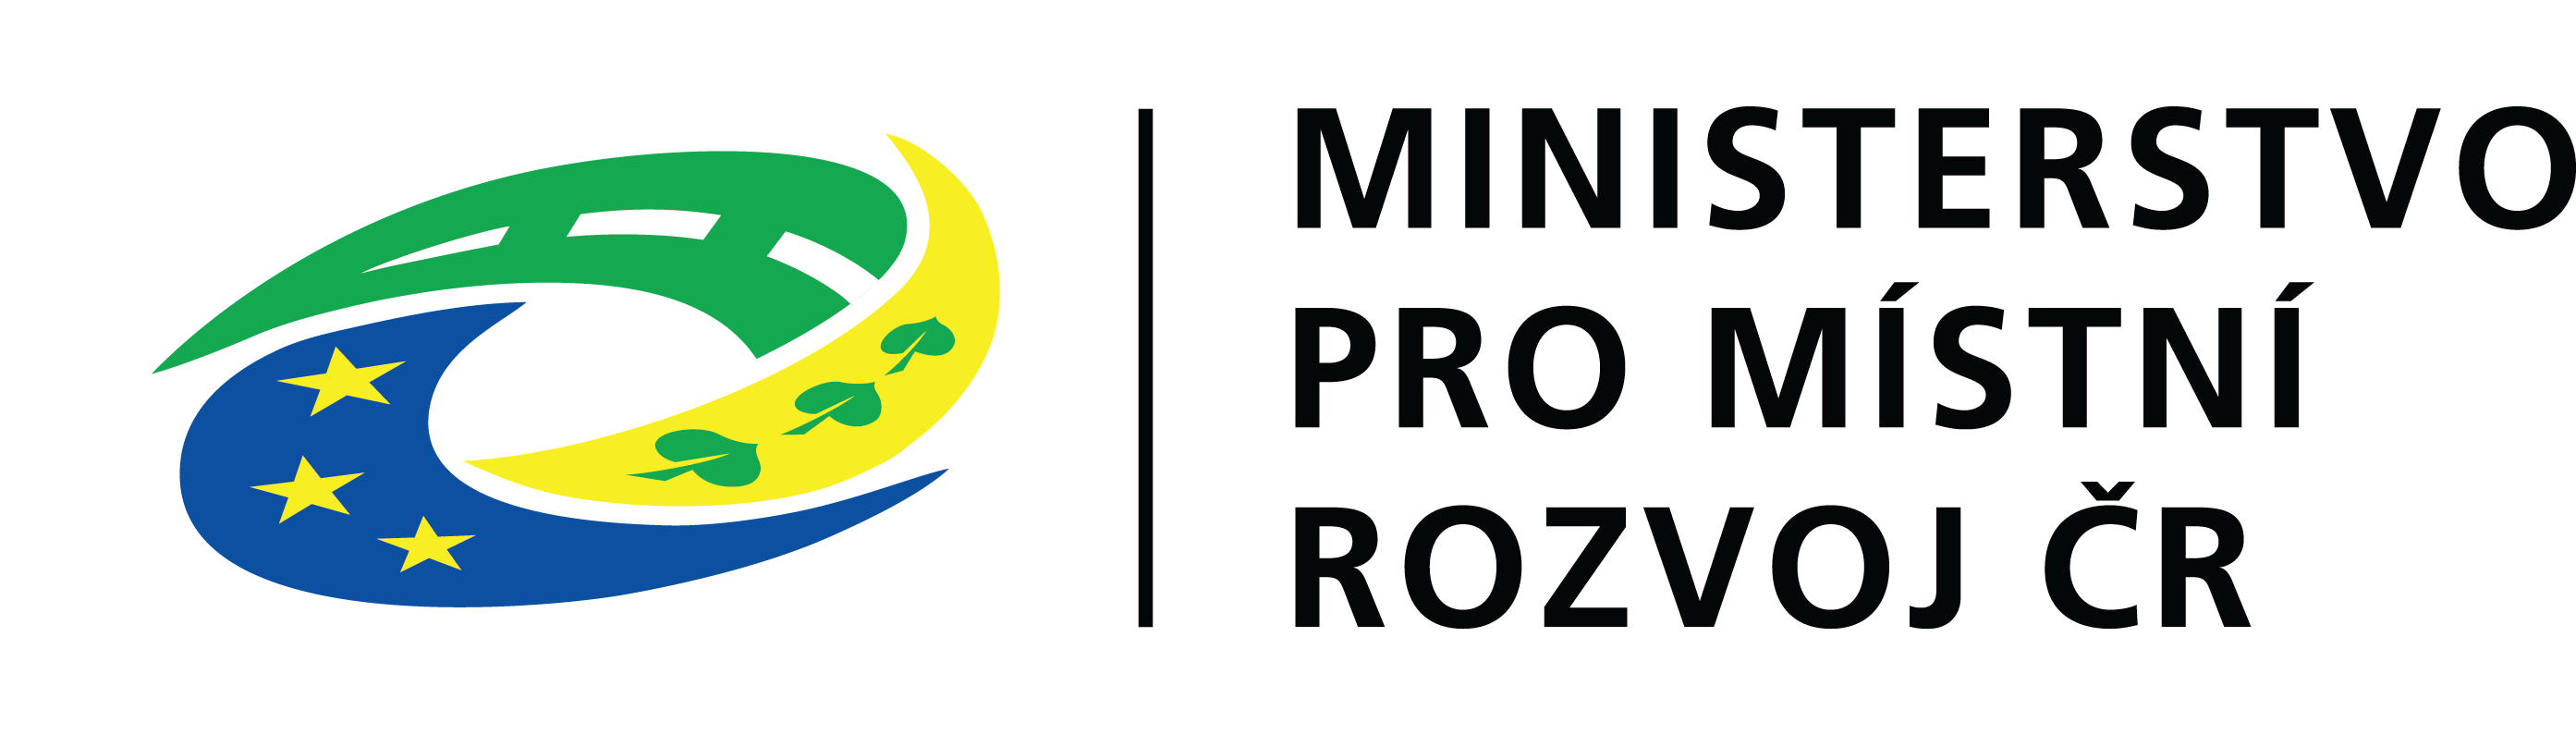 IROP - Ministerstvo pro místní rozvoj ČR